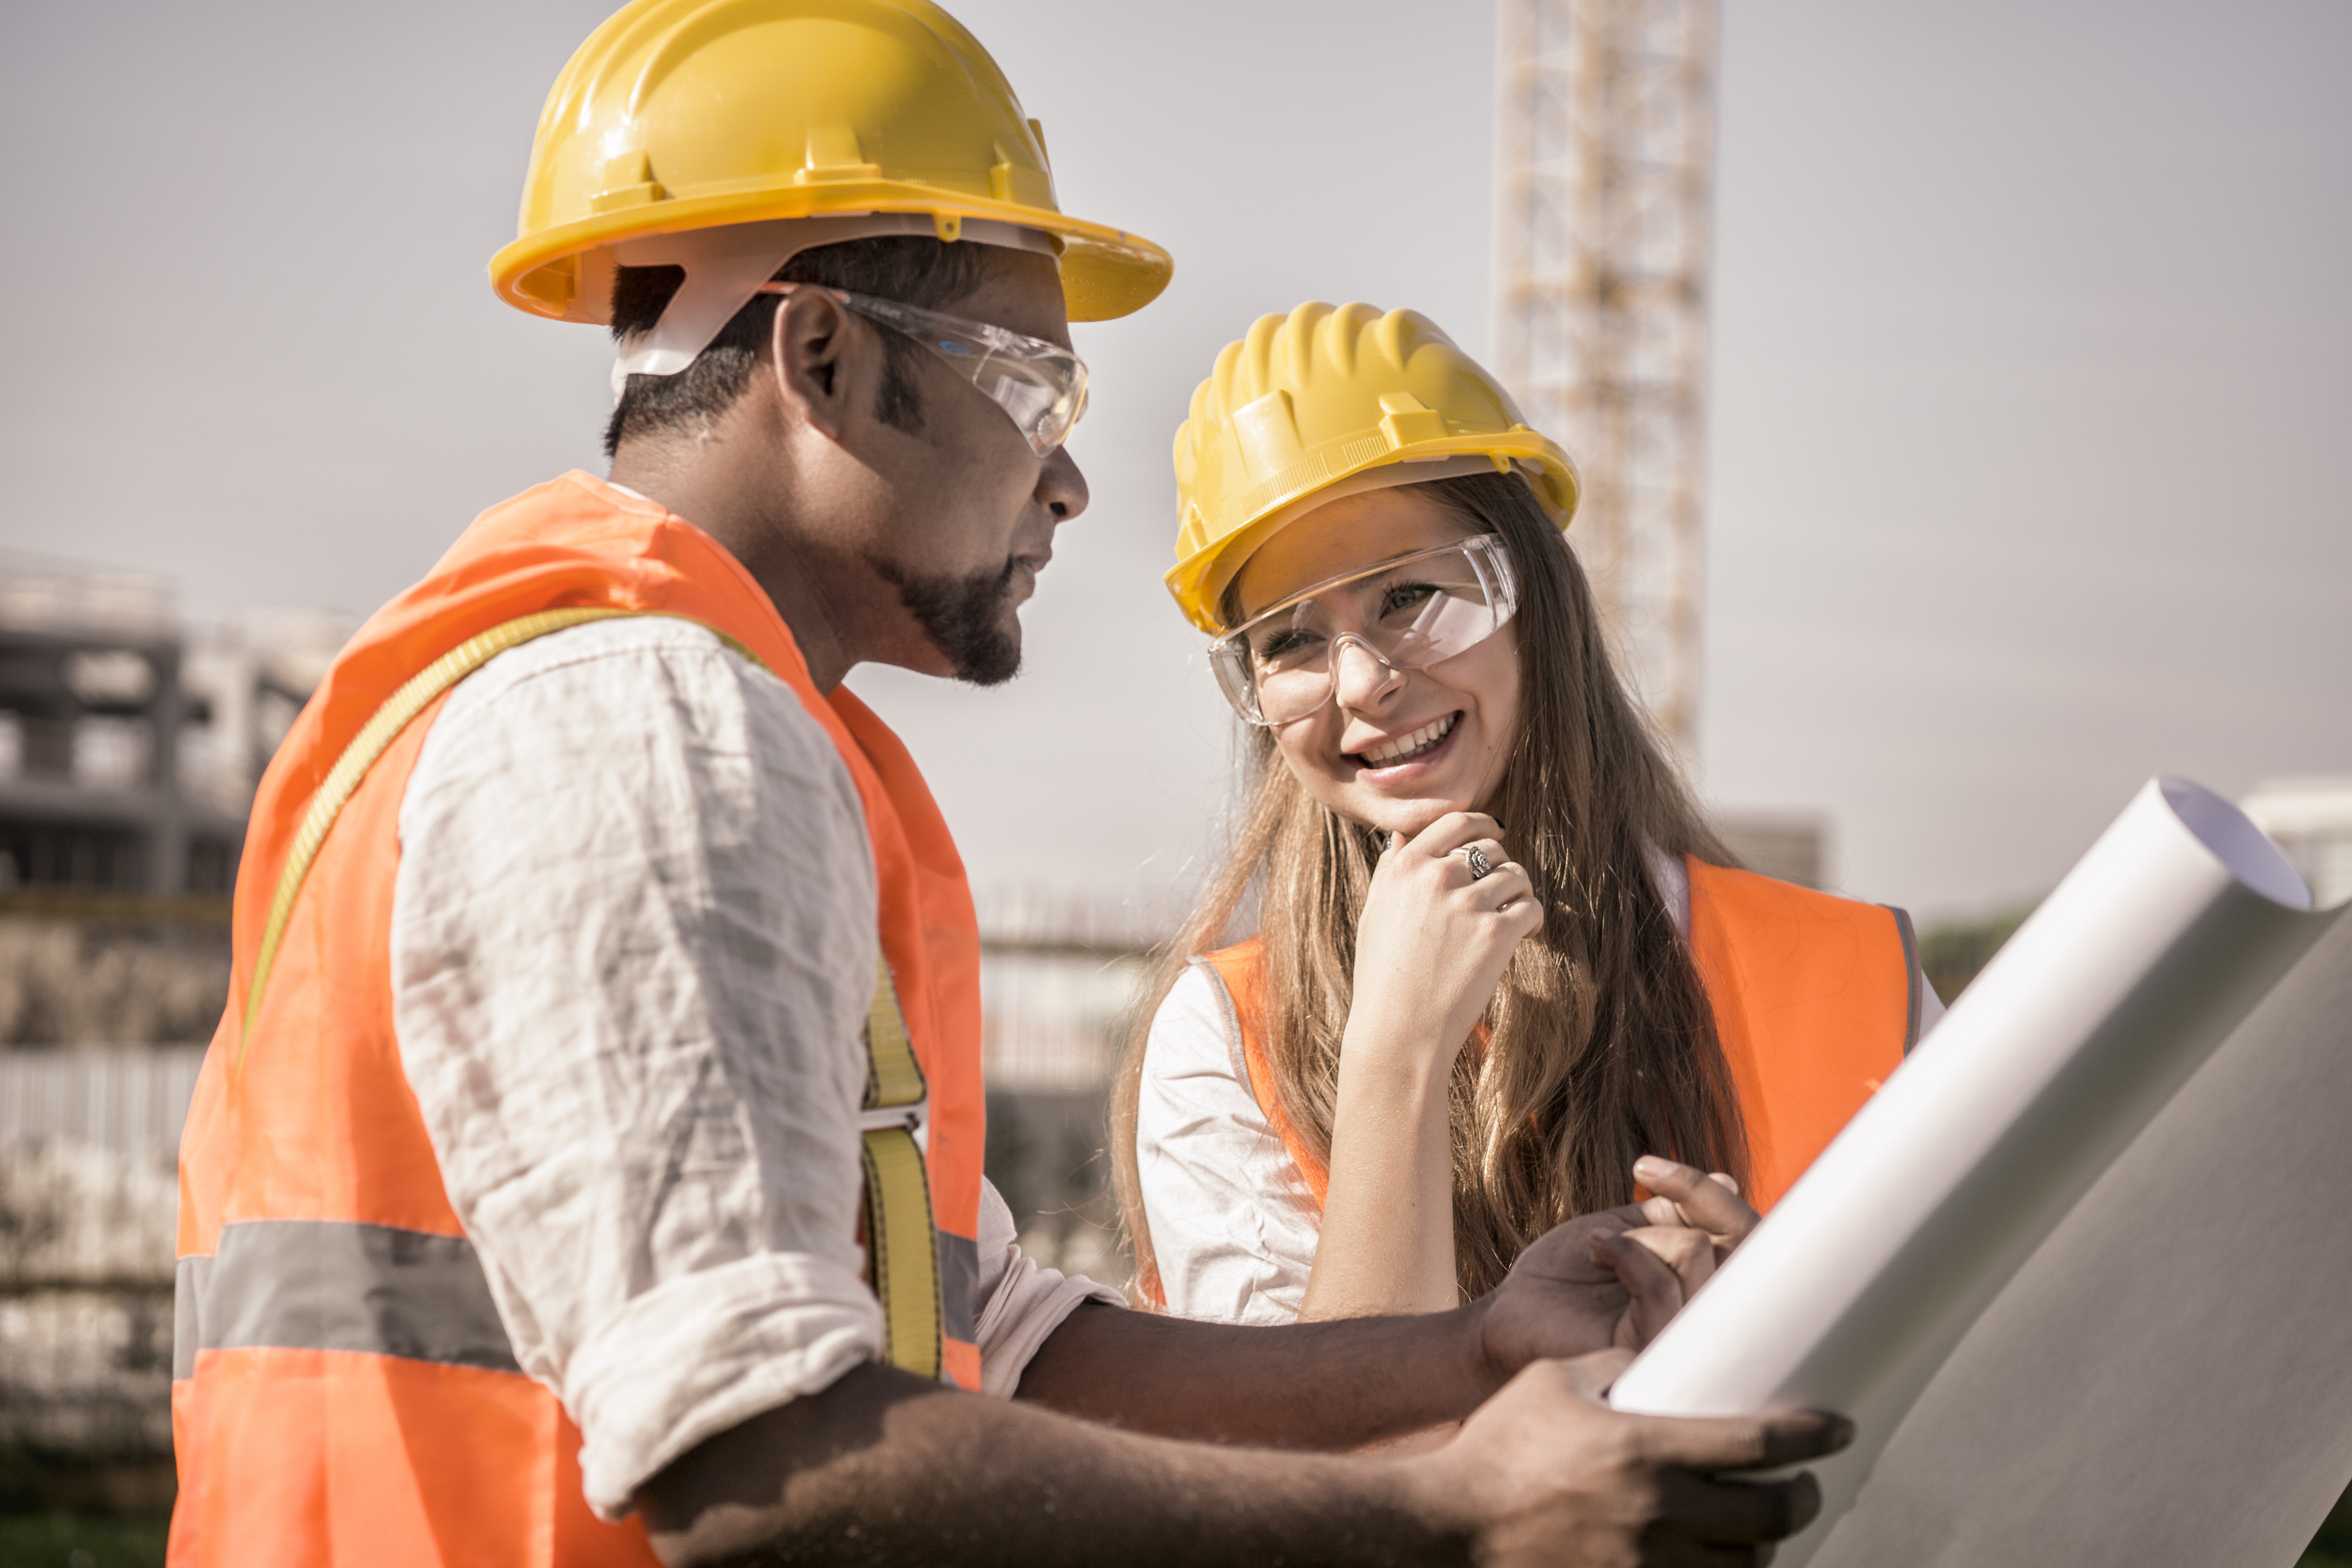 Apprenticeship Careers Australia - Fact Finding